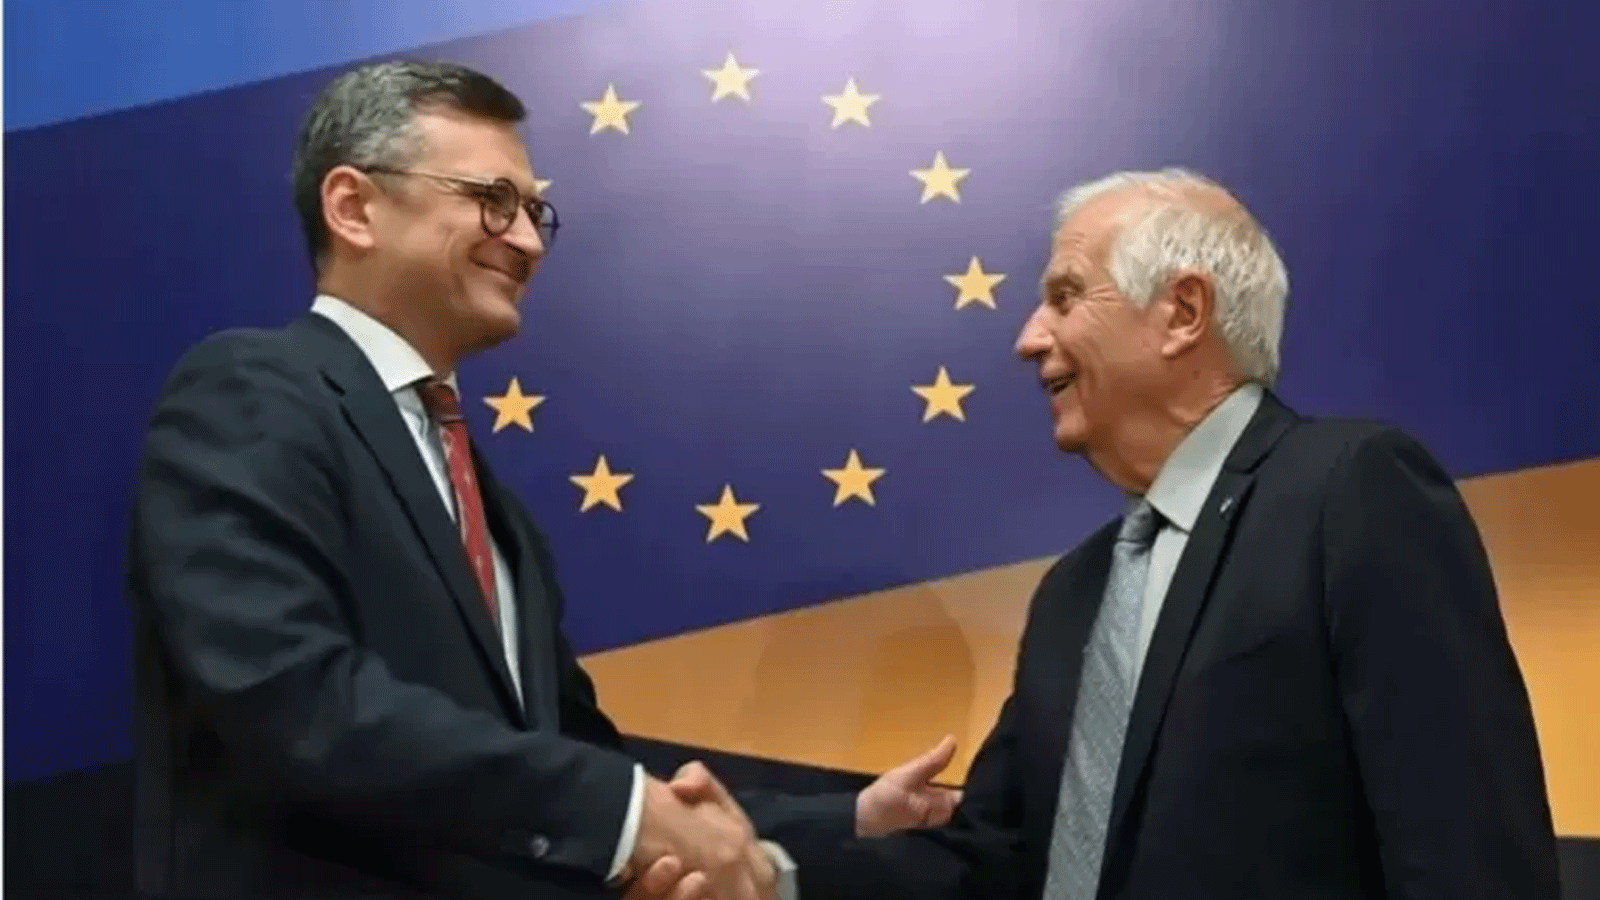 مسؤول السياسة الخارجية في الاتحاد الأوروبي جوزيب بوريل (يمين) من بين أولئك الذين طمأنوا كييف على أن الدعم الأوروبي لها لم يضعف